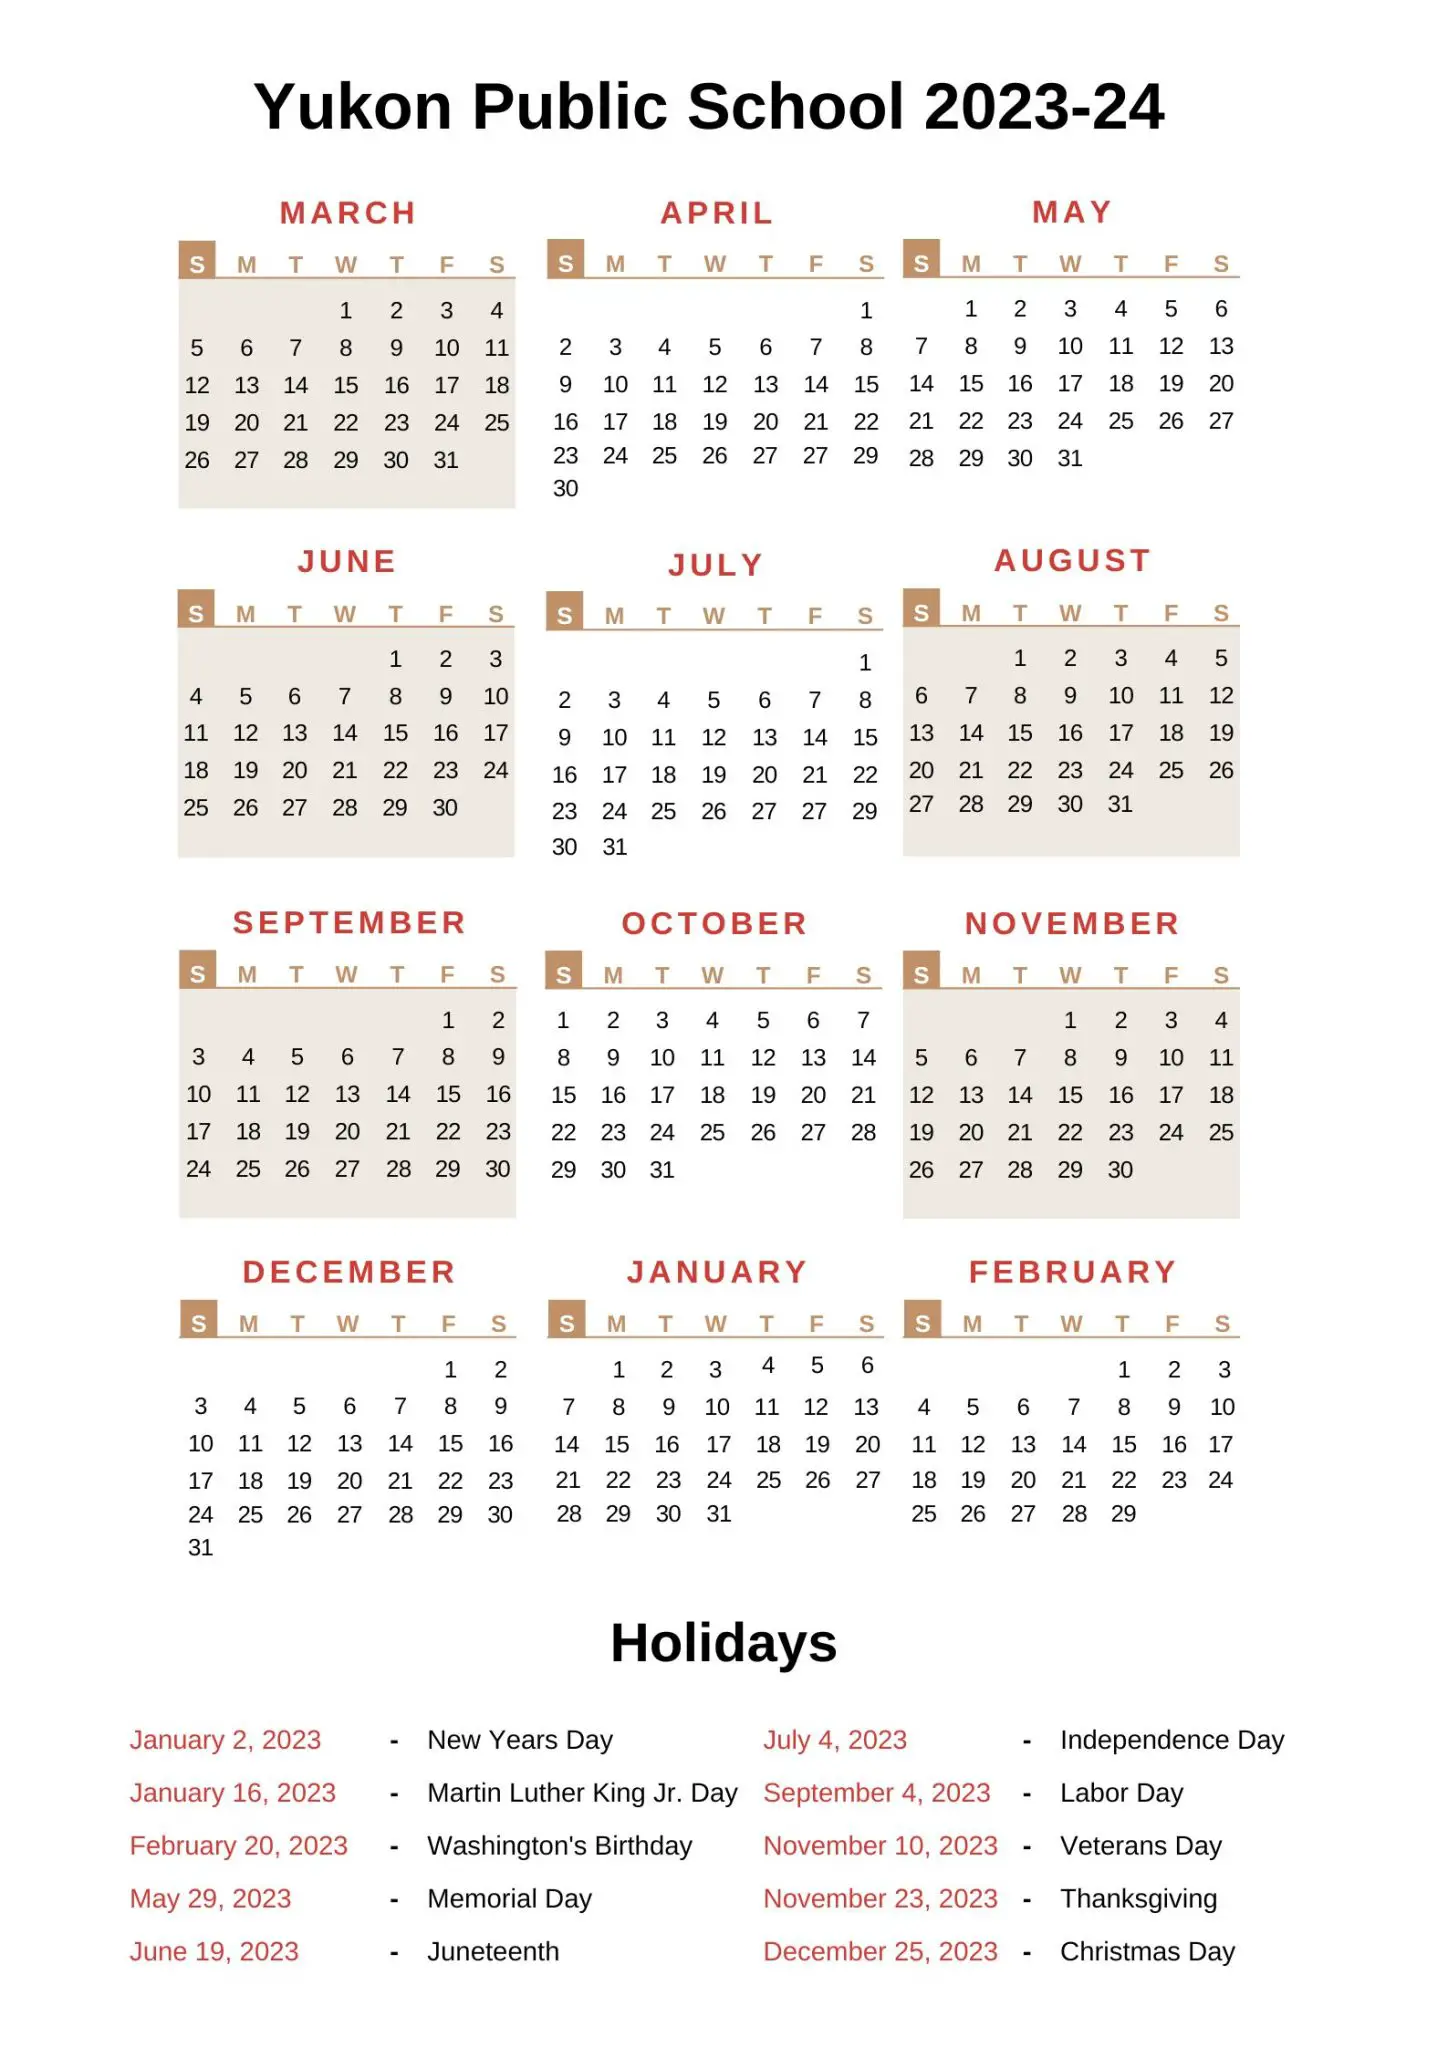 Yukon Public Schools Calendar 202324 With Holidays